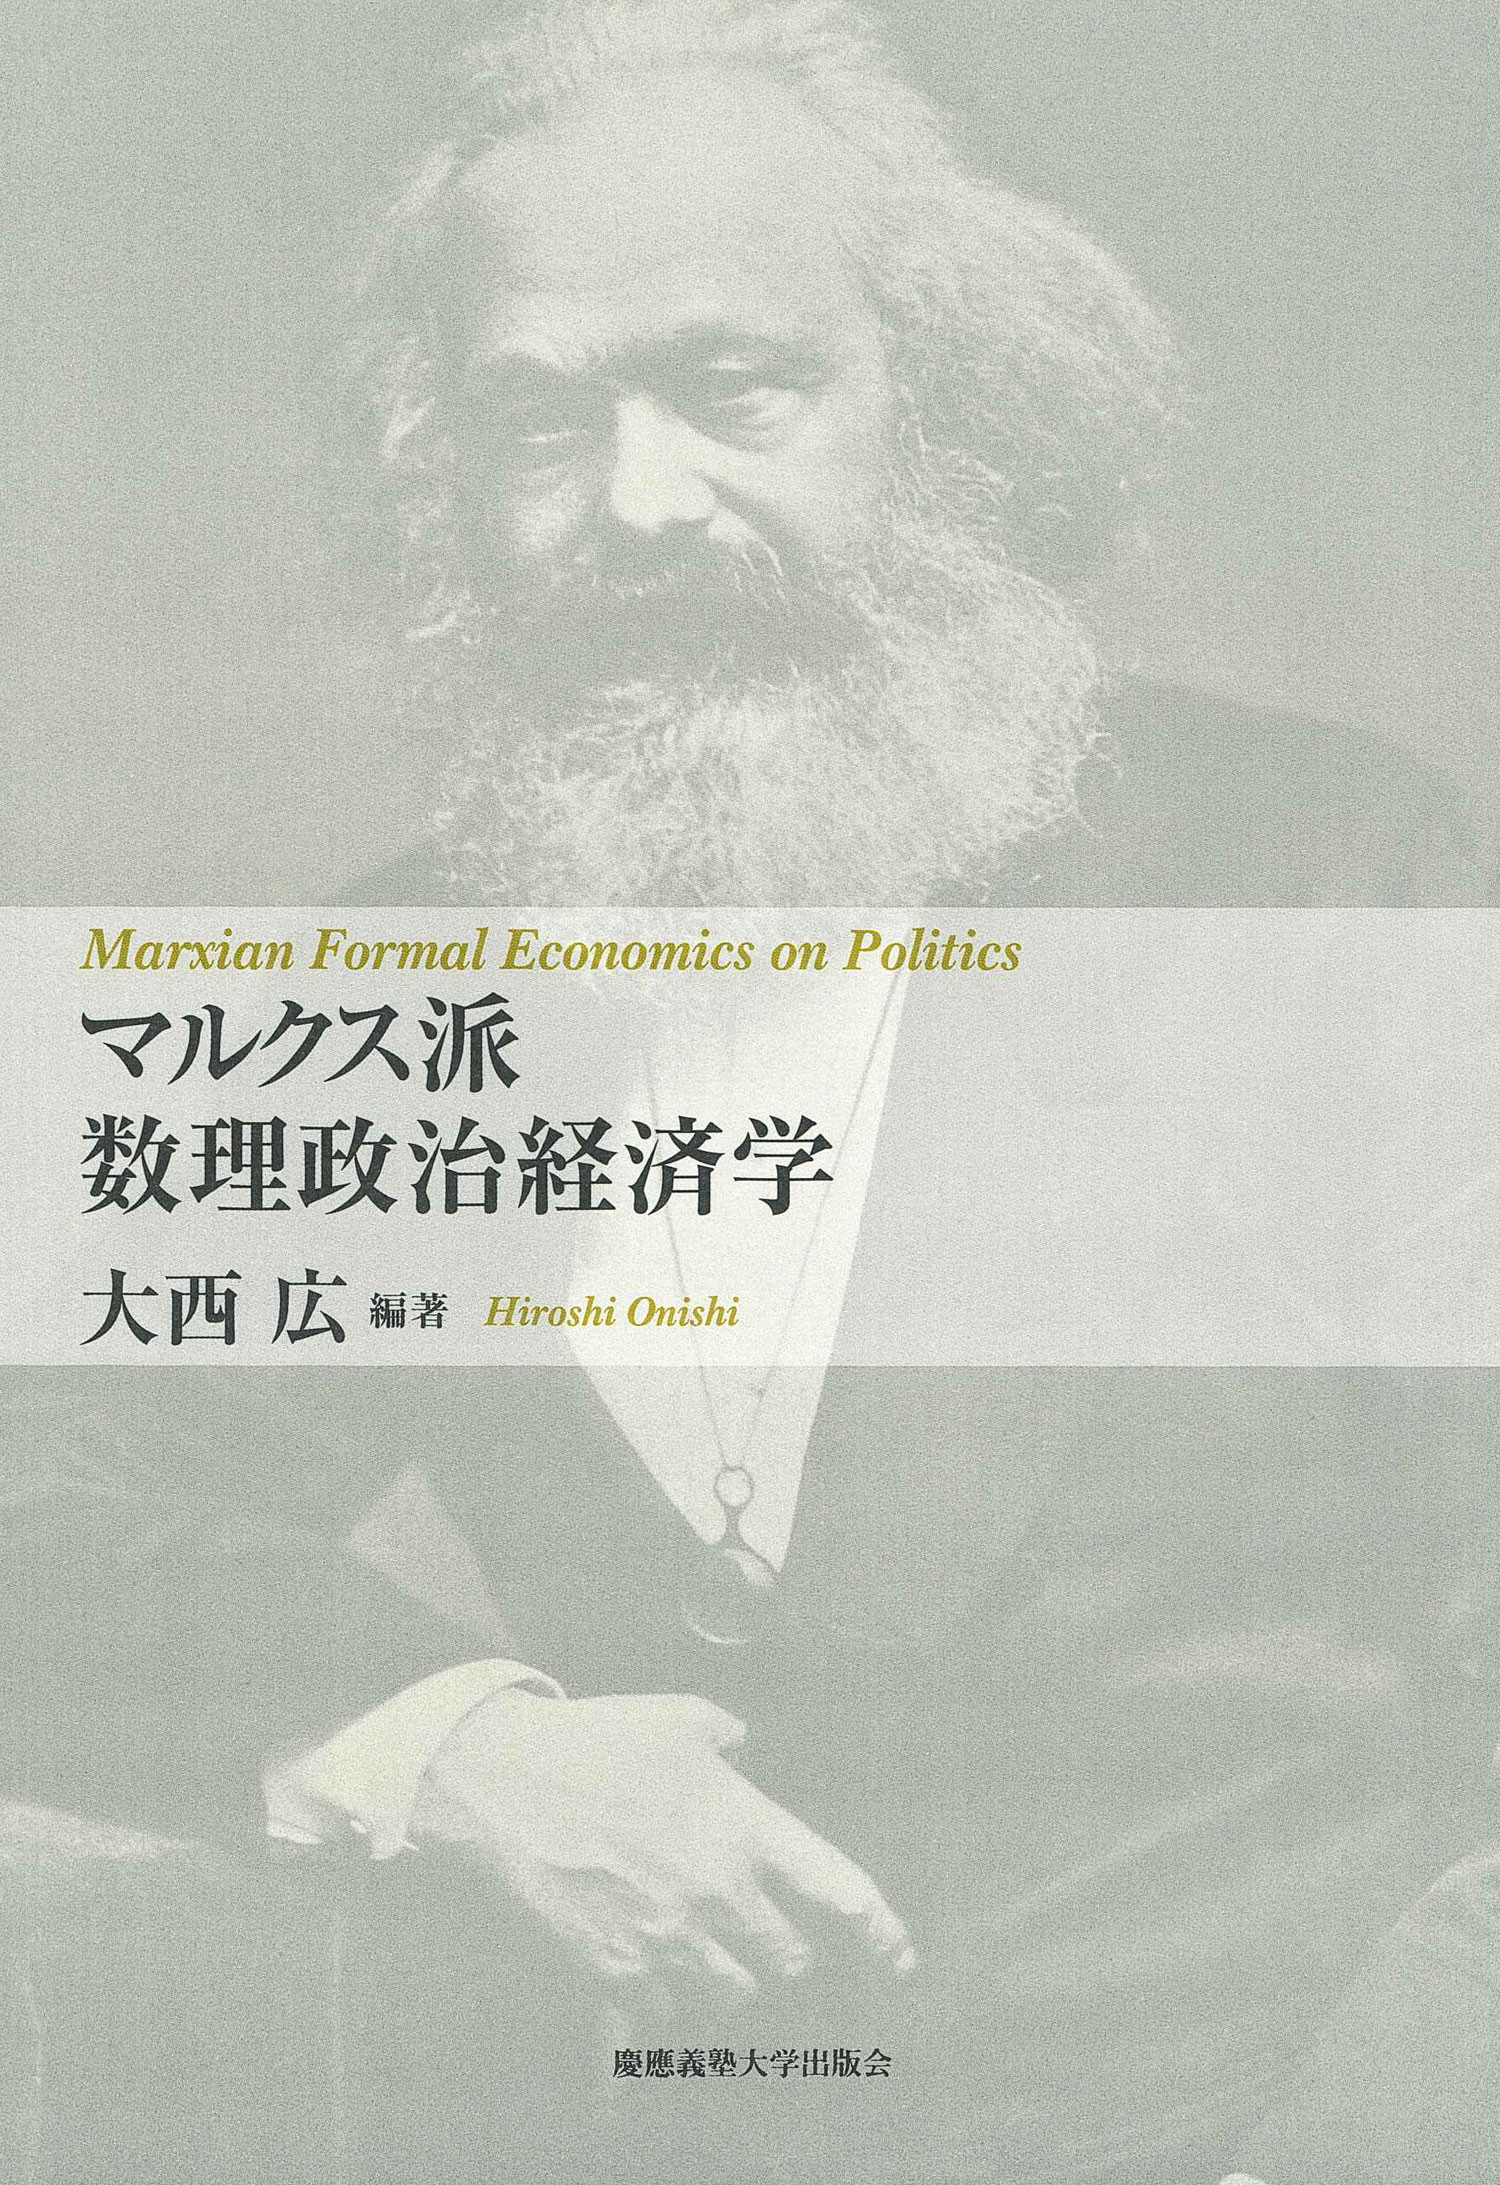 マルクス派数理政治経済学の商品画像